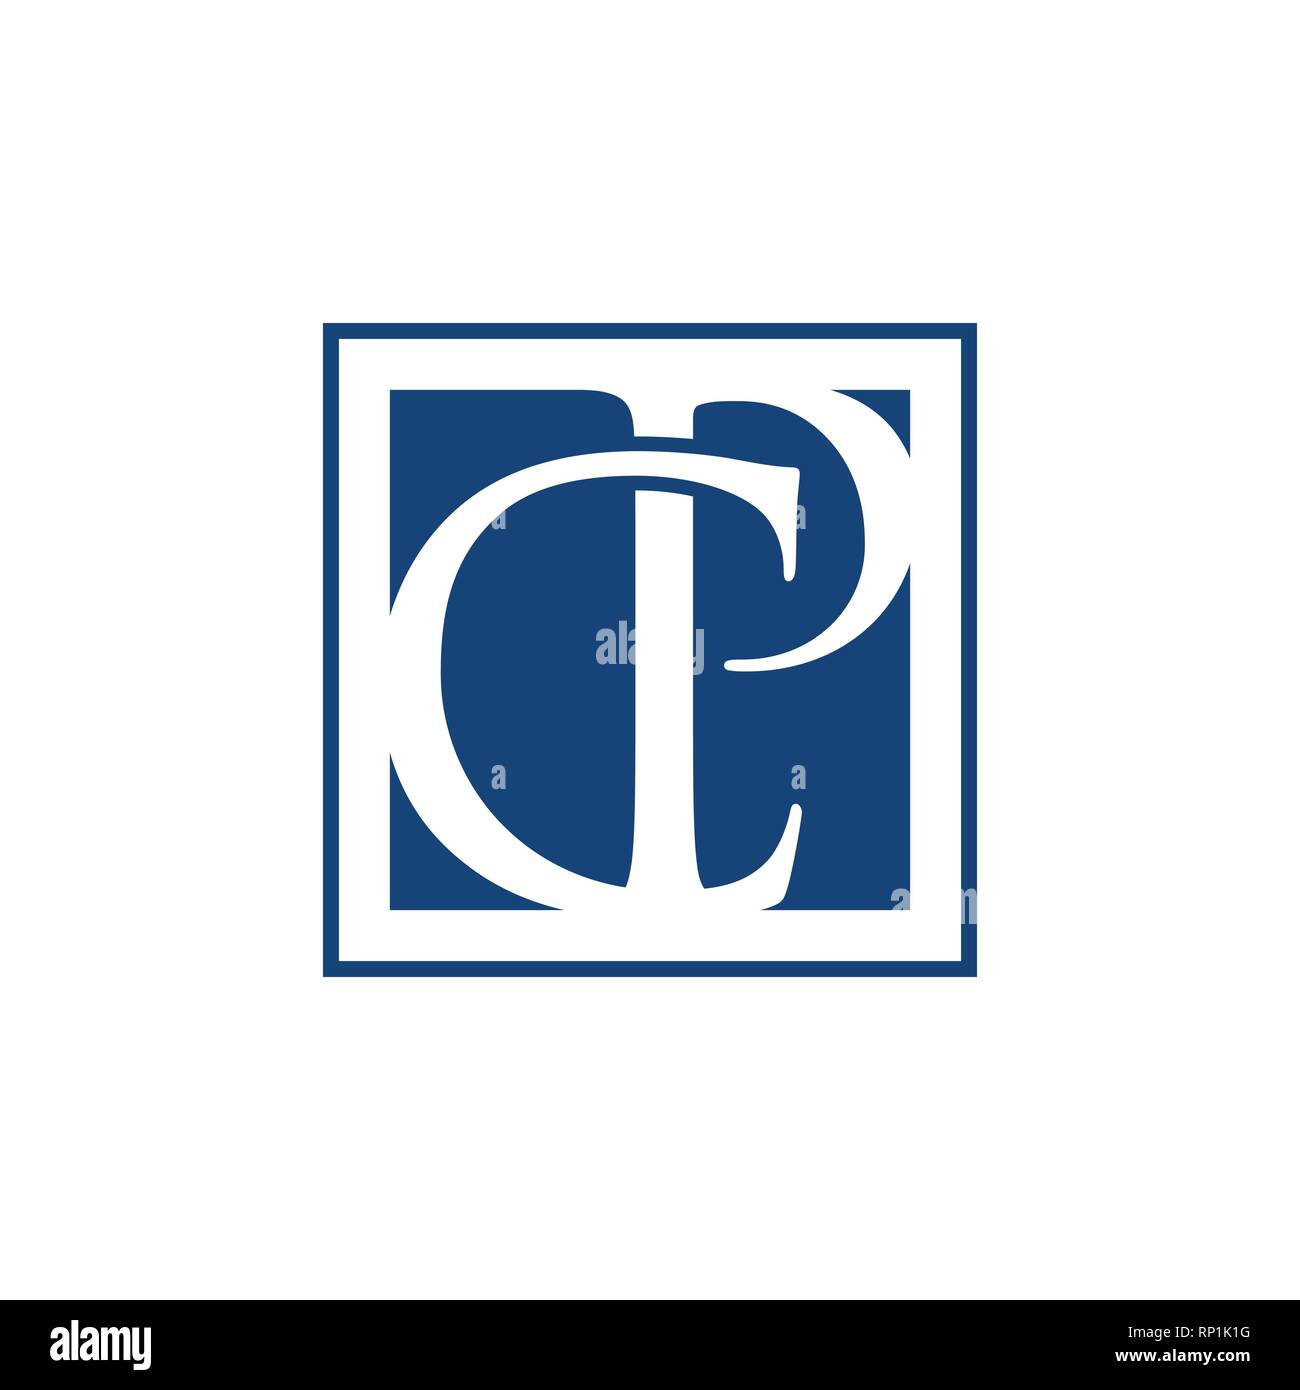 CP schreiben Erste alphabet Logo Design Template Element. Abstrakte CP schreiben Logo mit quadratischen Hintergrund Form Stock Vektor